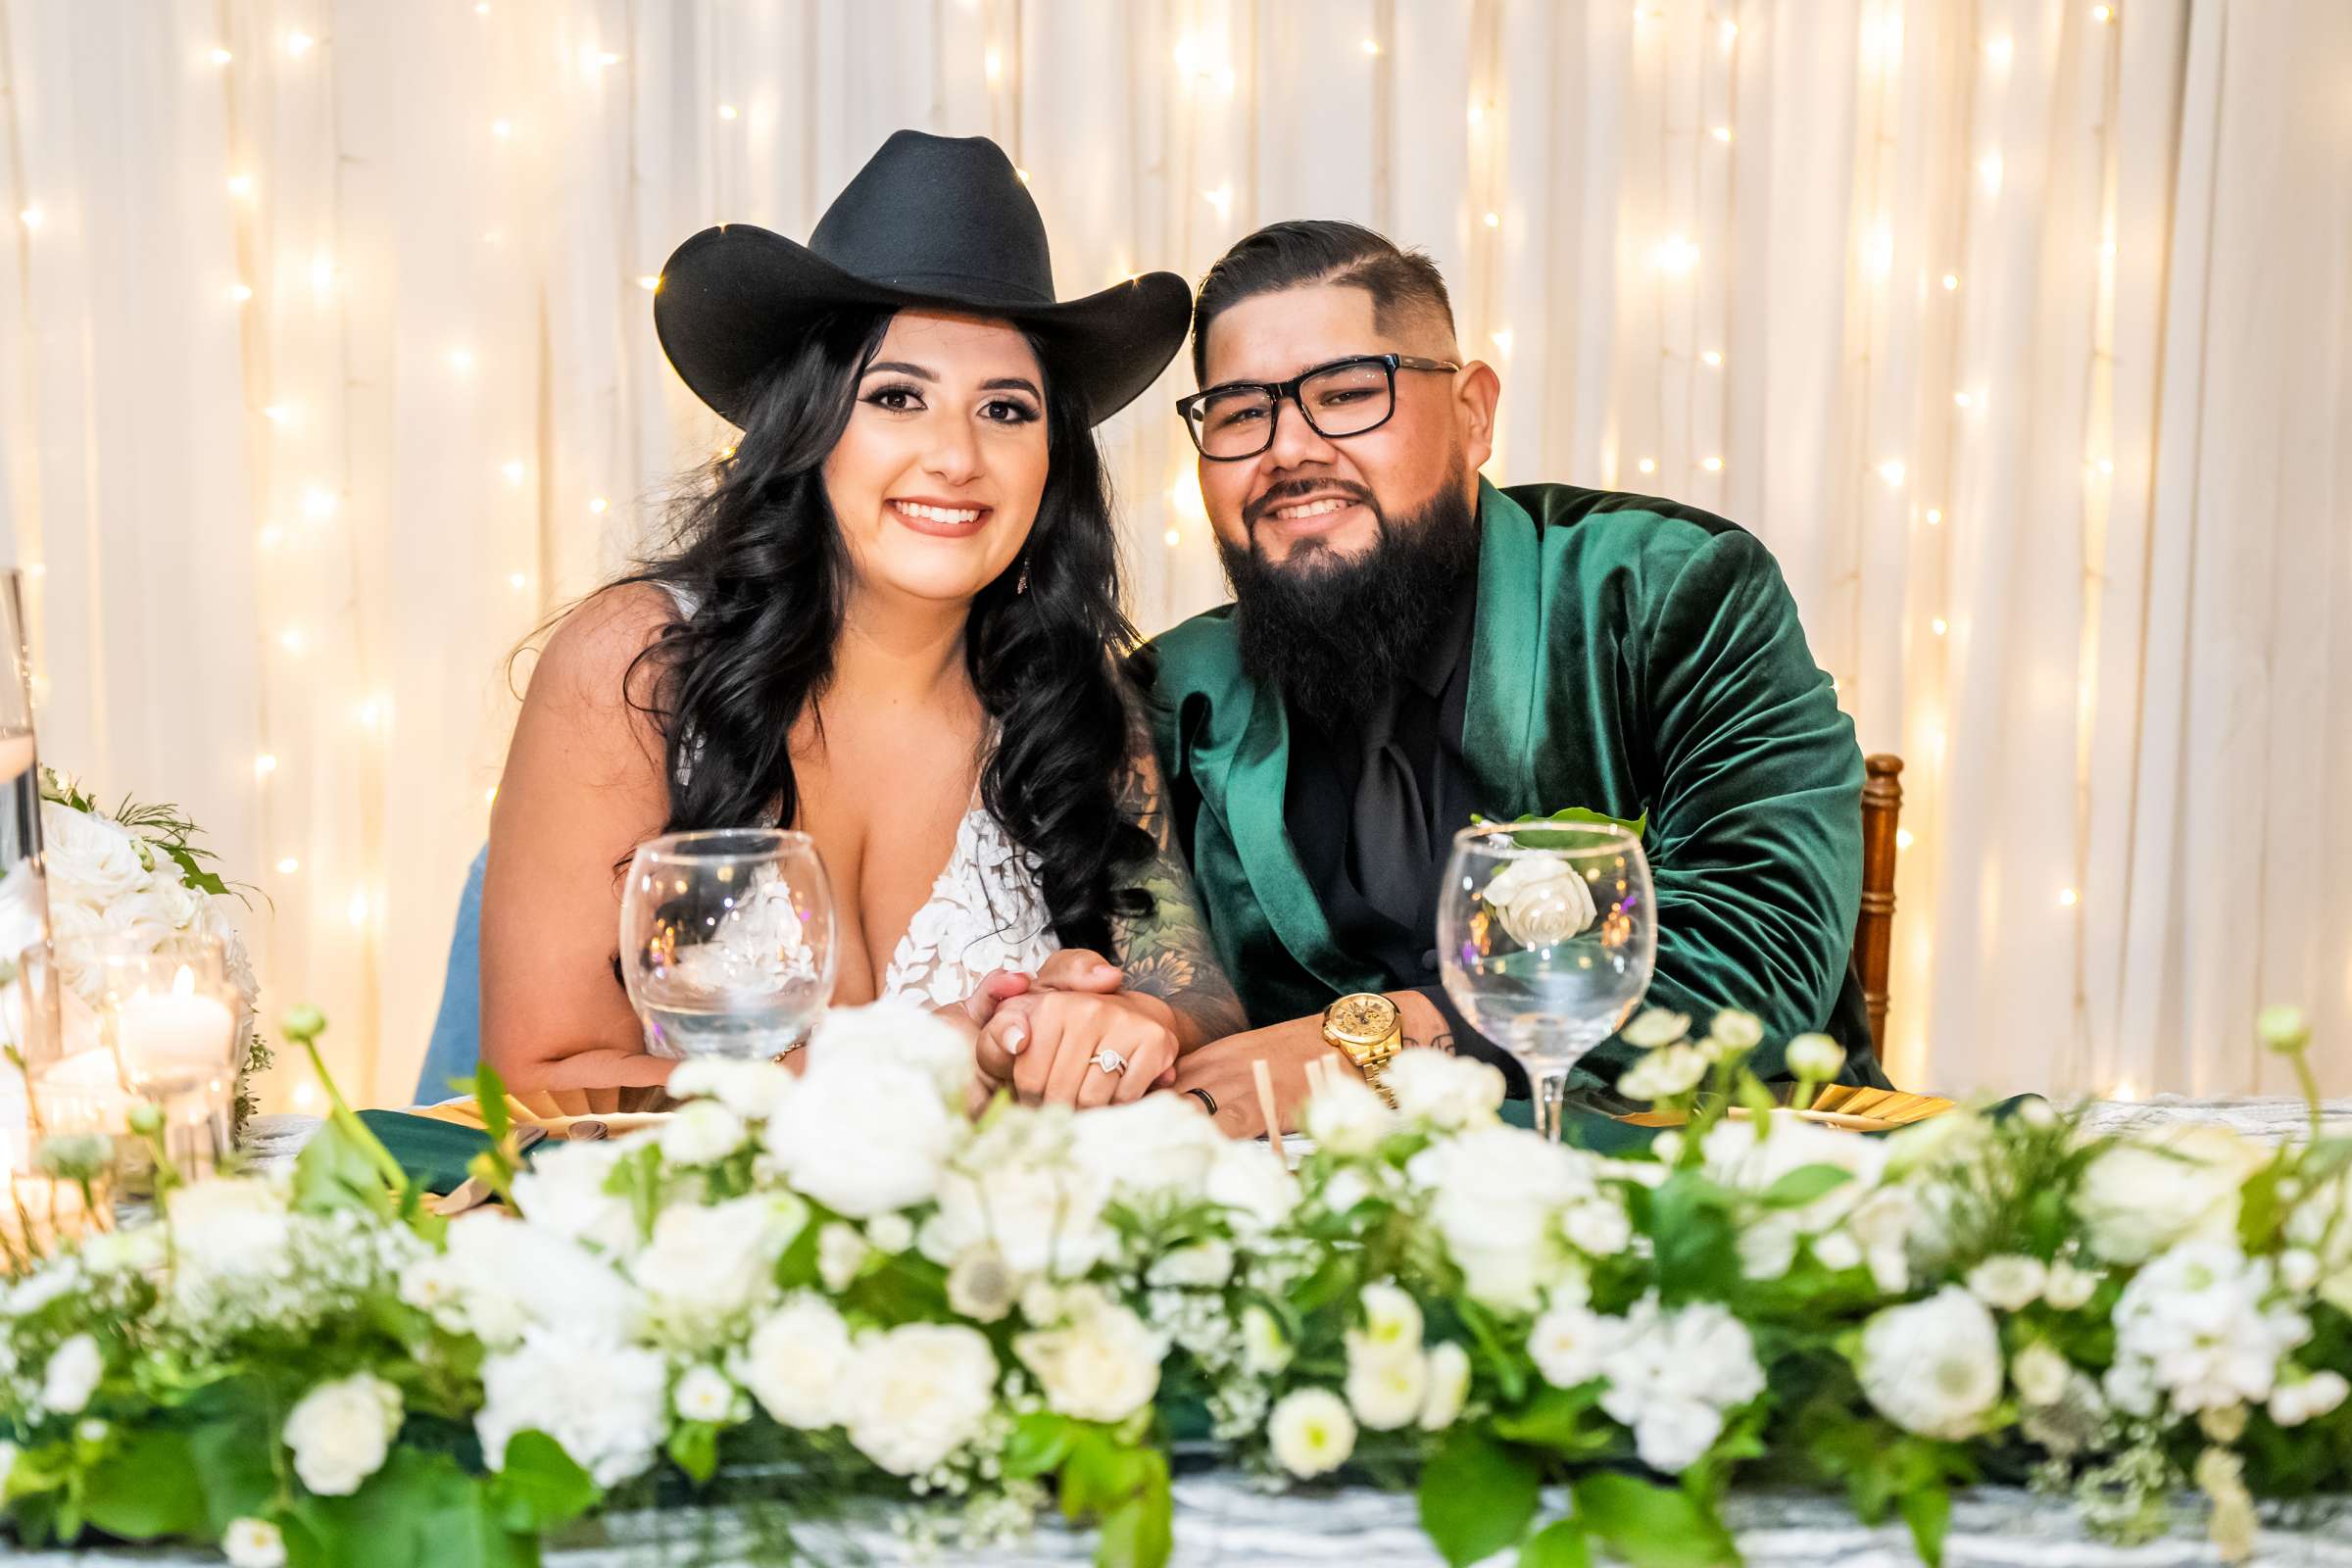 La Hacienda Wedding, Ashley and Alvaro Wedding Photo #19 by True Photography